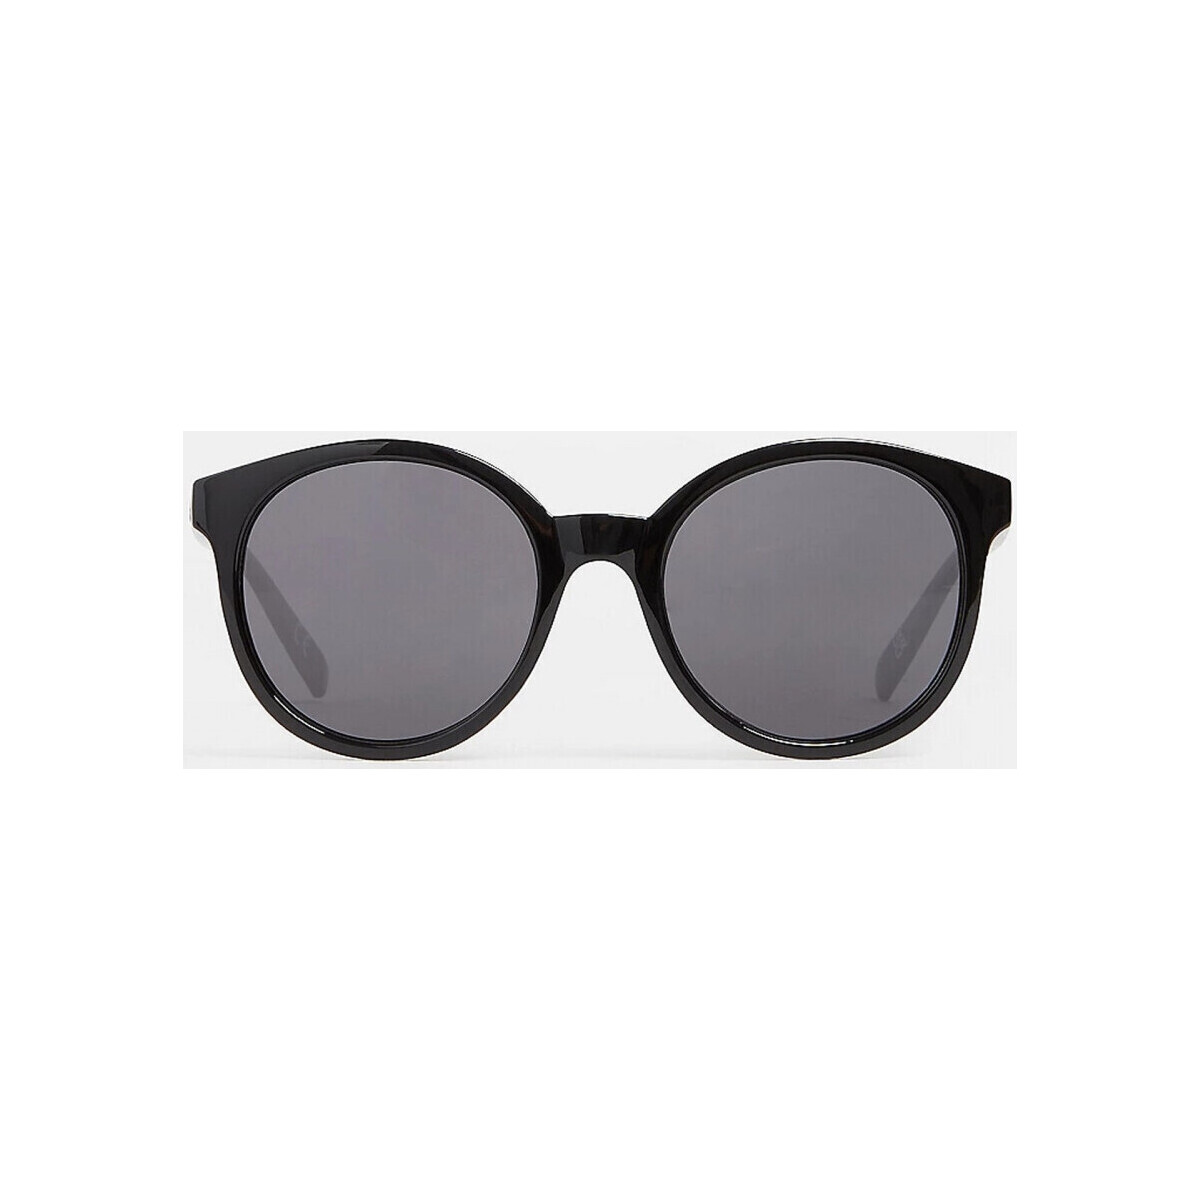 Zegarki & Biżuteria  Męskie okulary przeciwsłoneczne Vans Rise and shine sunglass Czarny